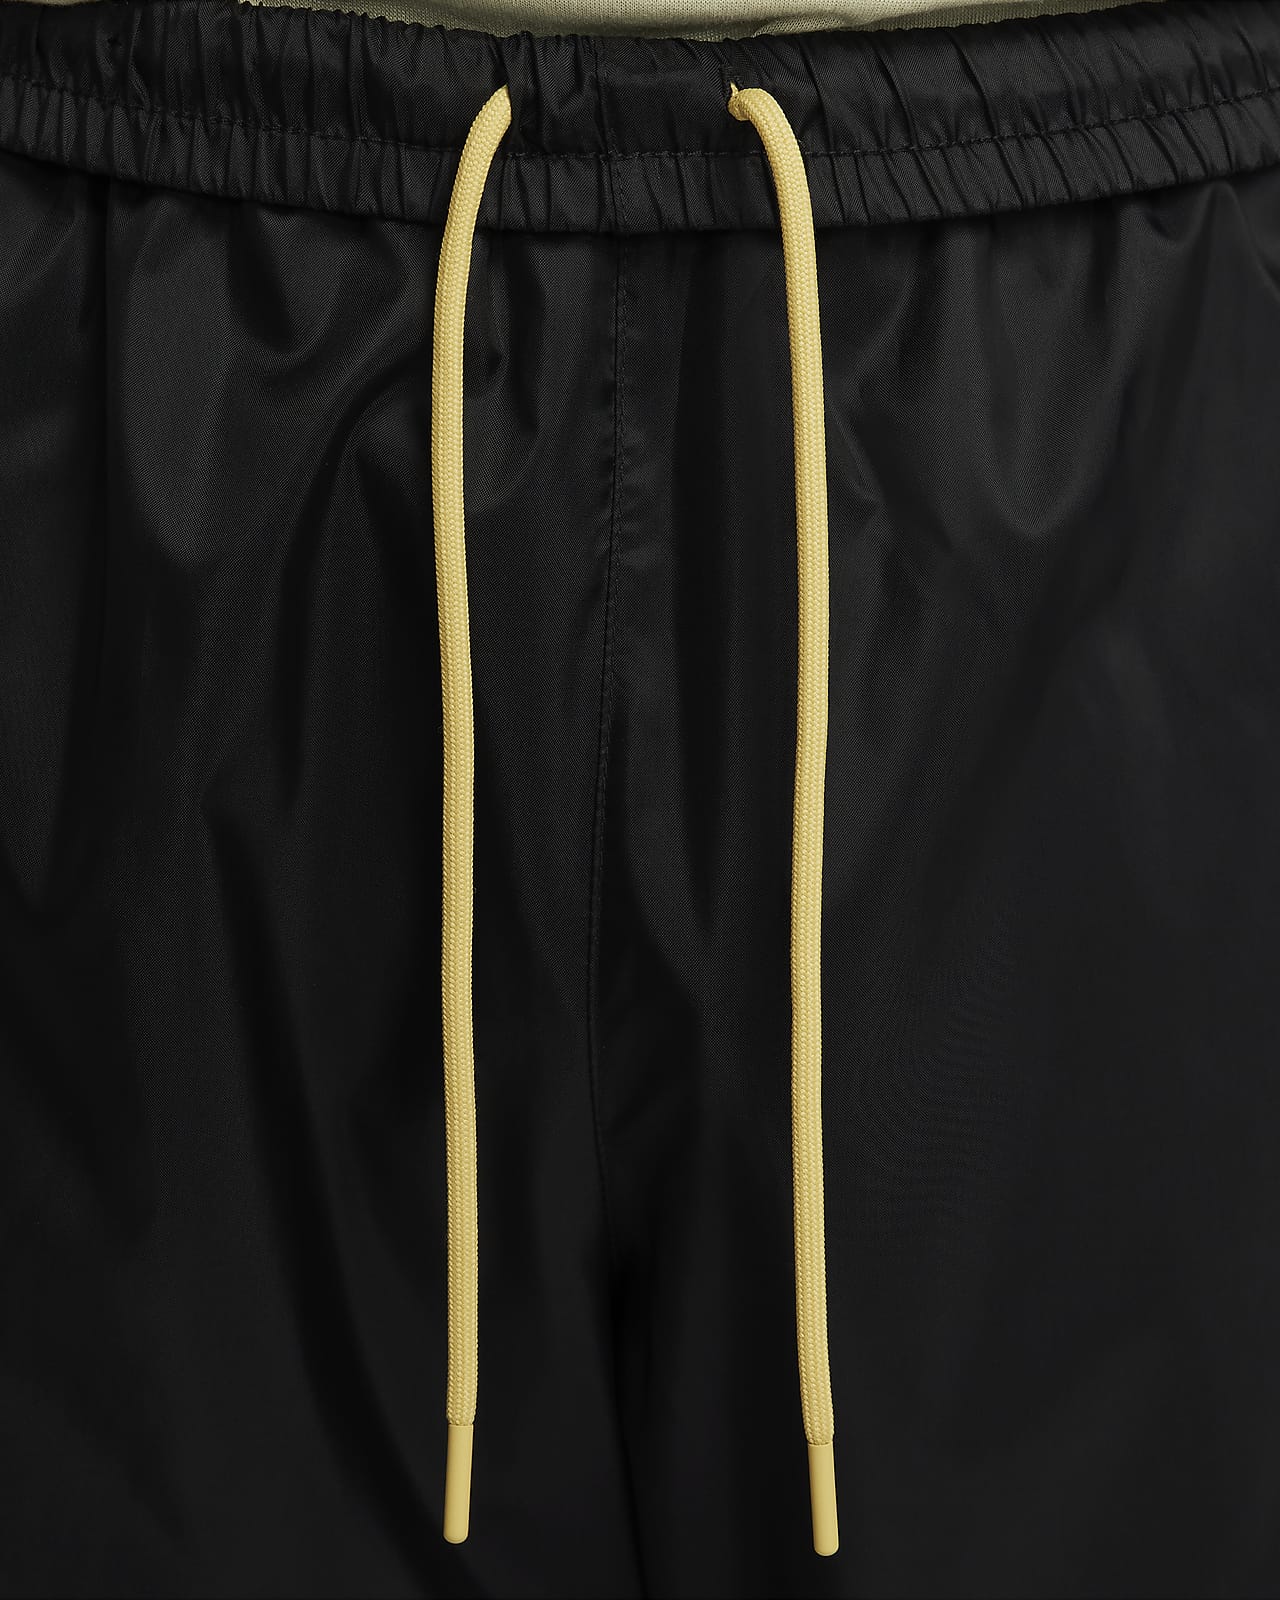 Nike Windrunner Men's Woven Lined Pants